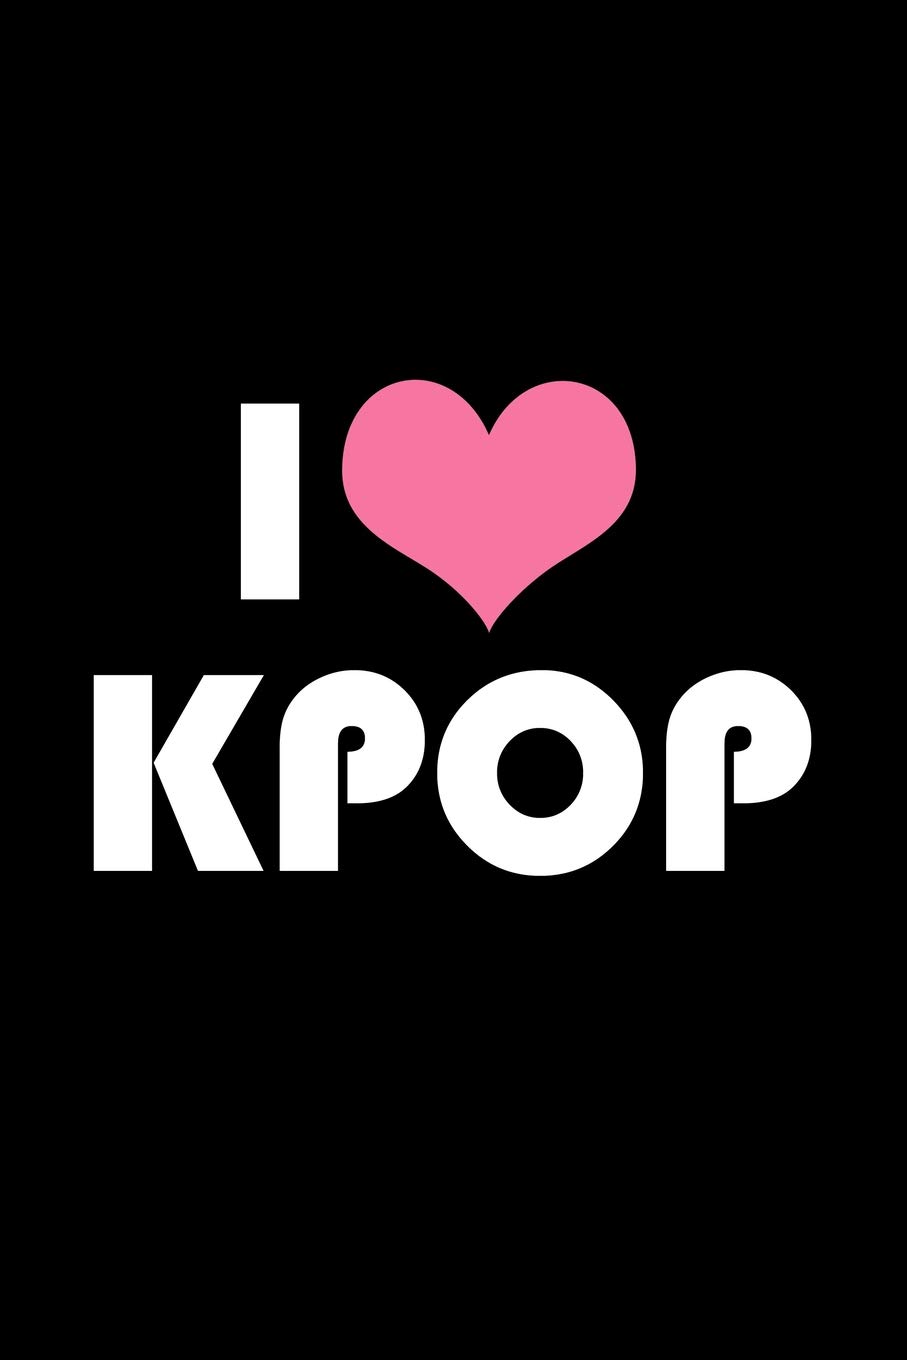 I Love Kpop - KibrisPDR